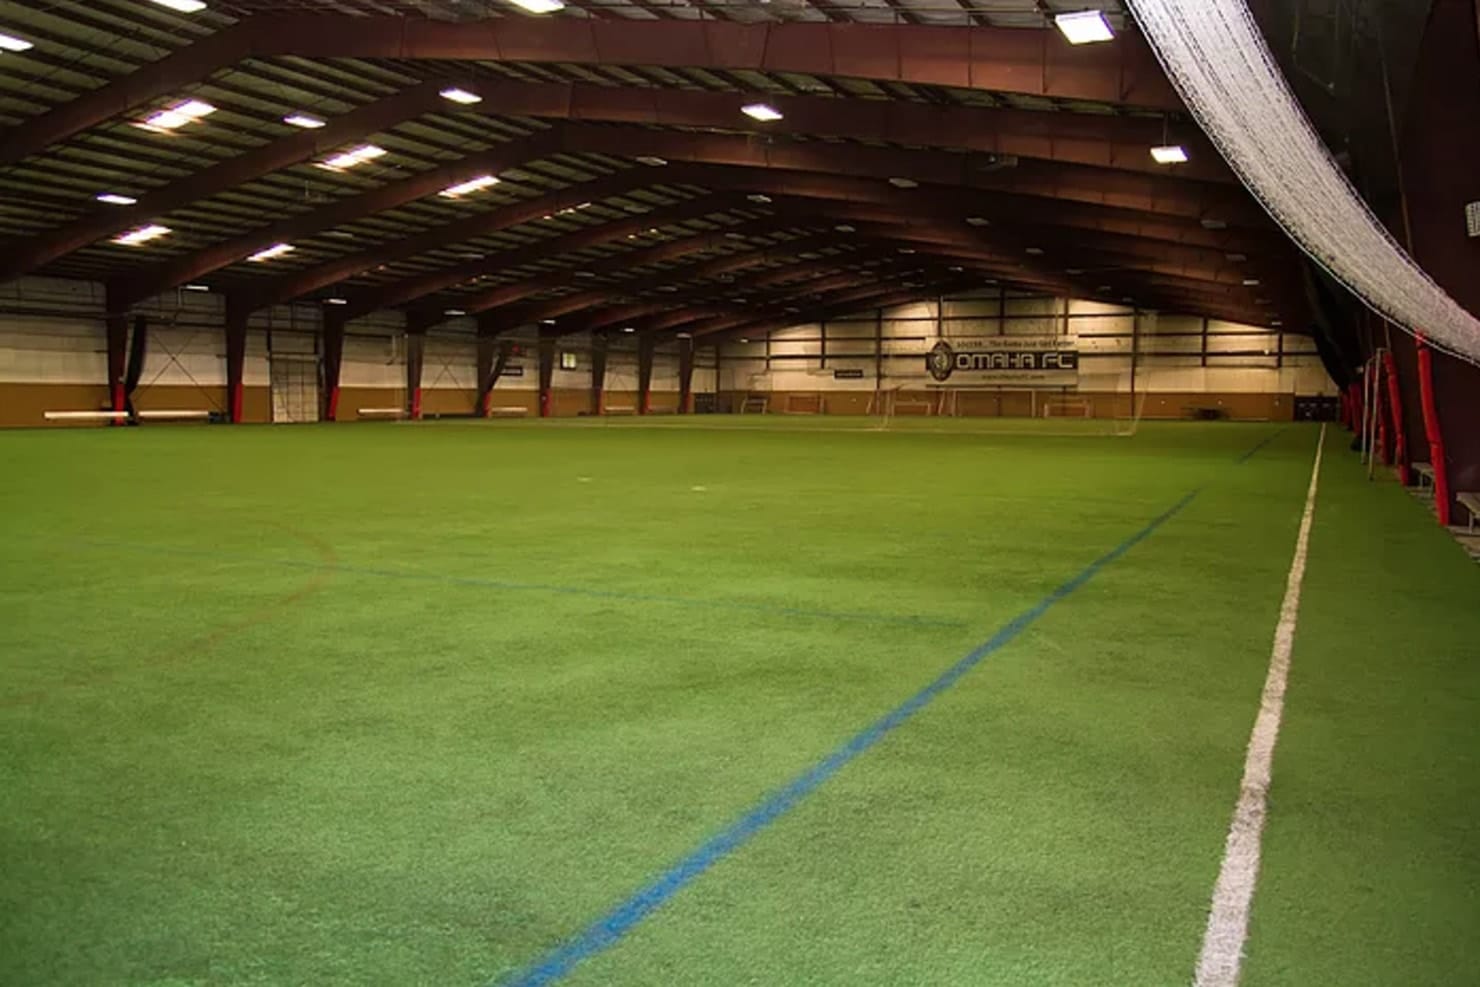 General Steel Indoor Soccer Facility Omaha